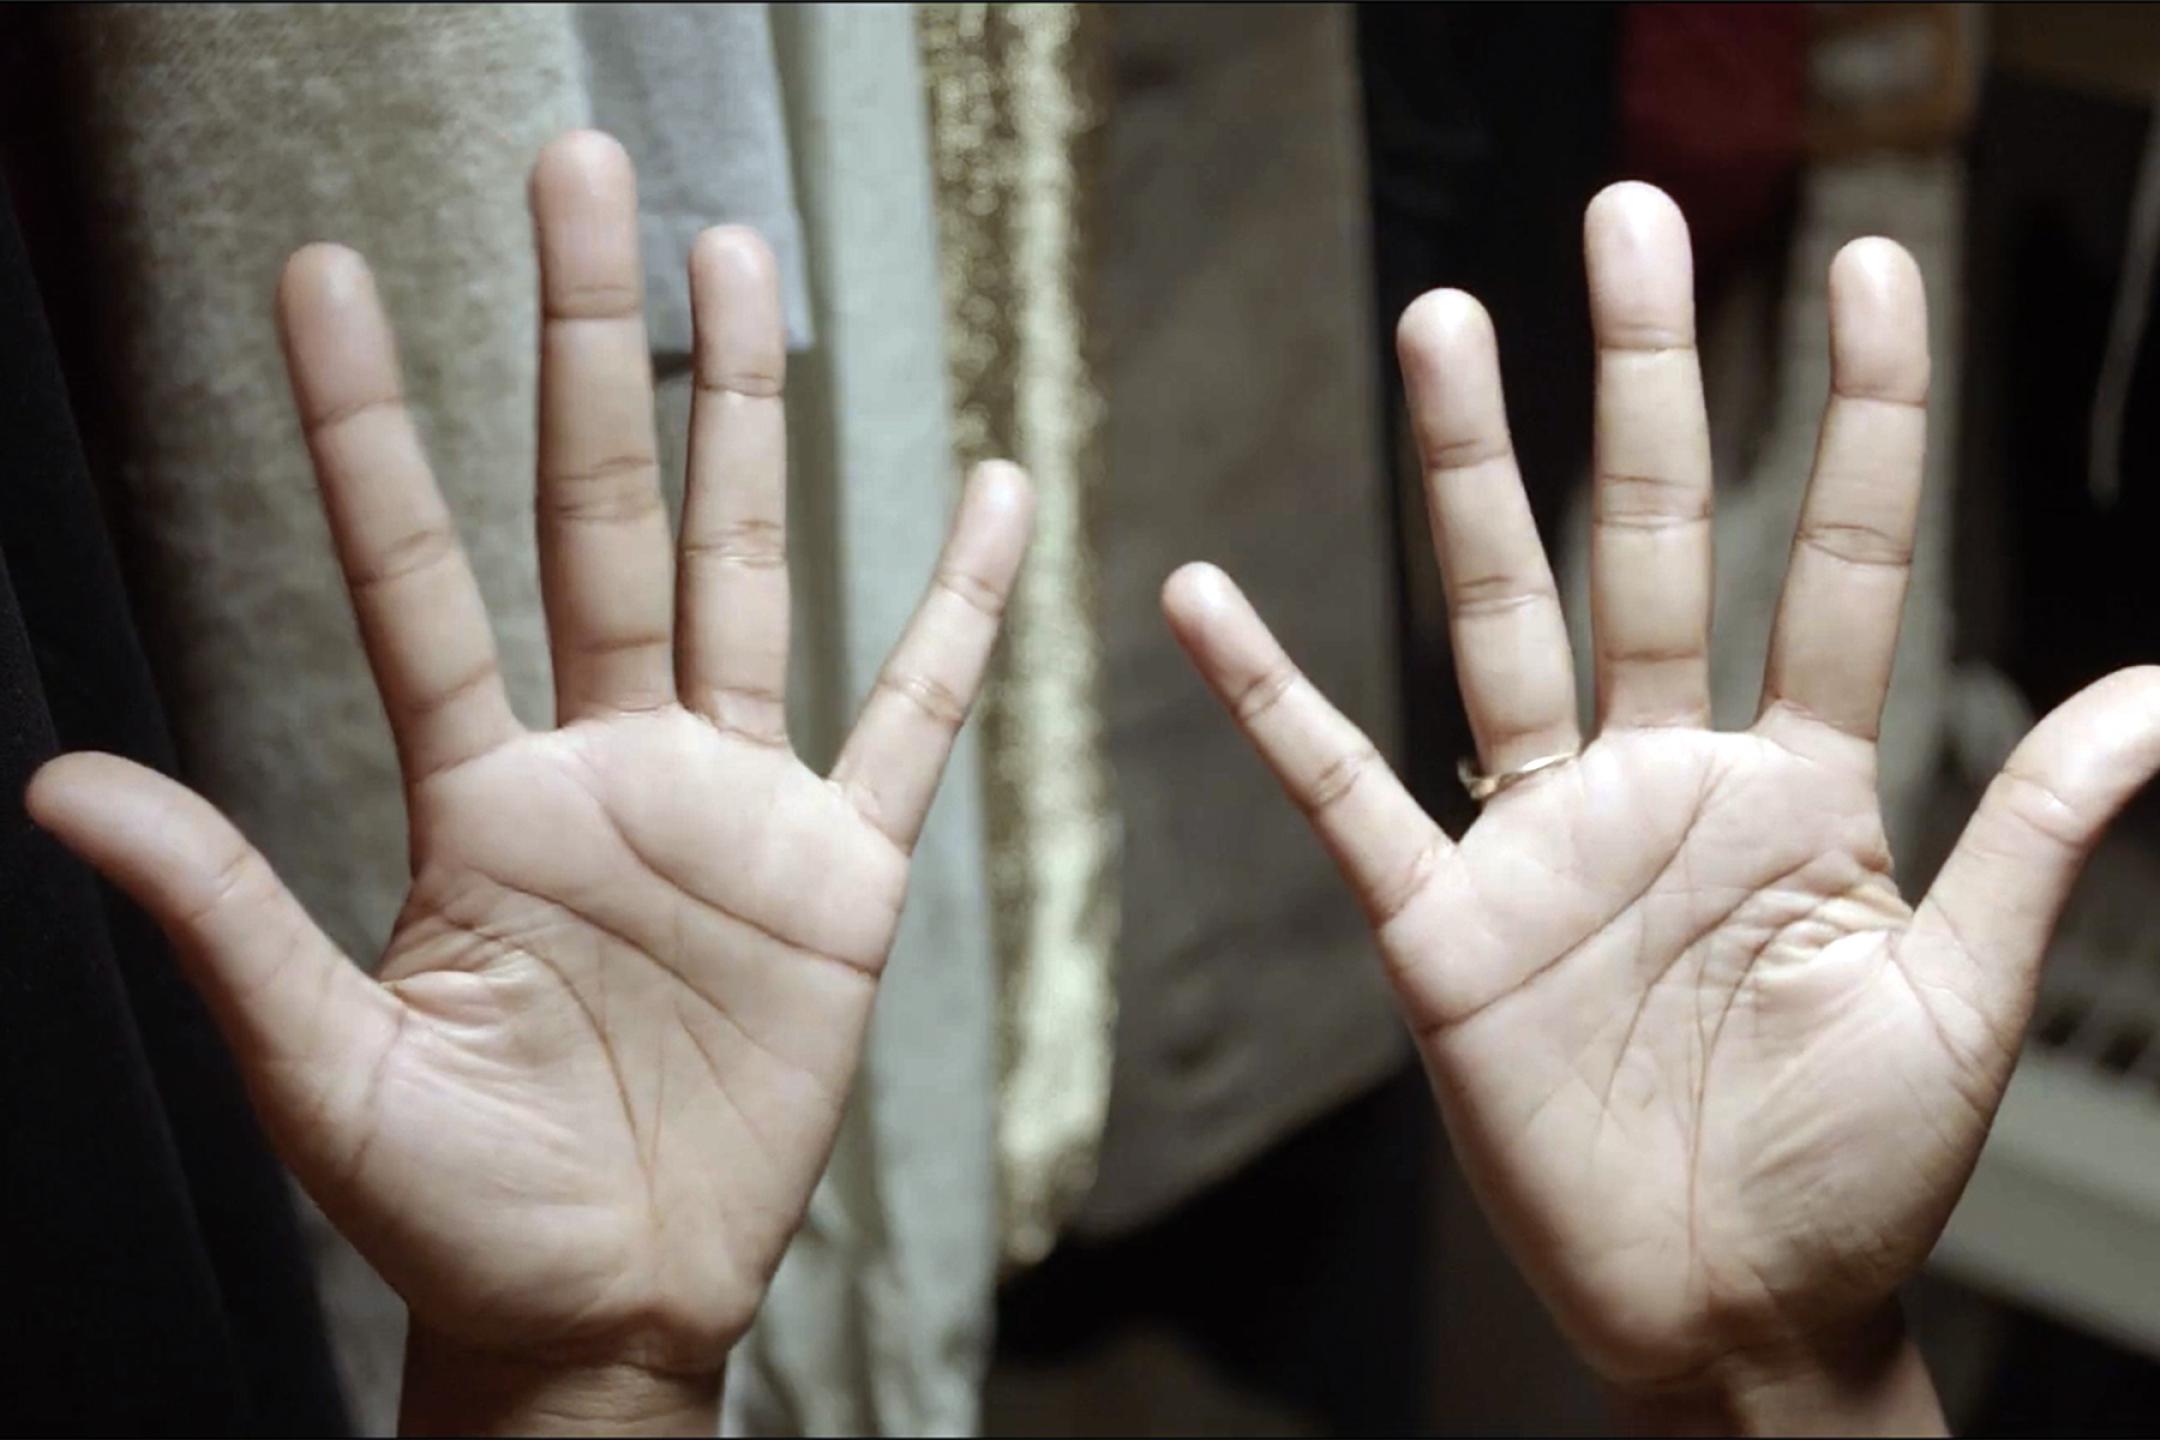 Zwei Hände, deren Handflächen nach oben zur Kamera zeigen.